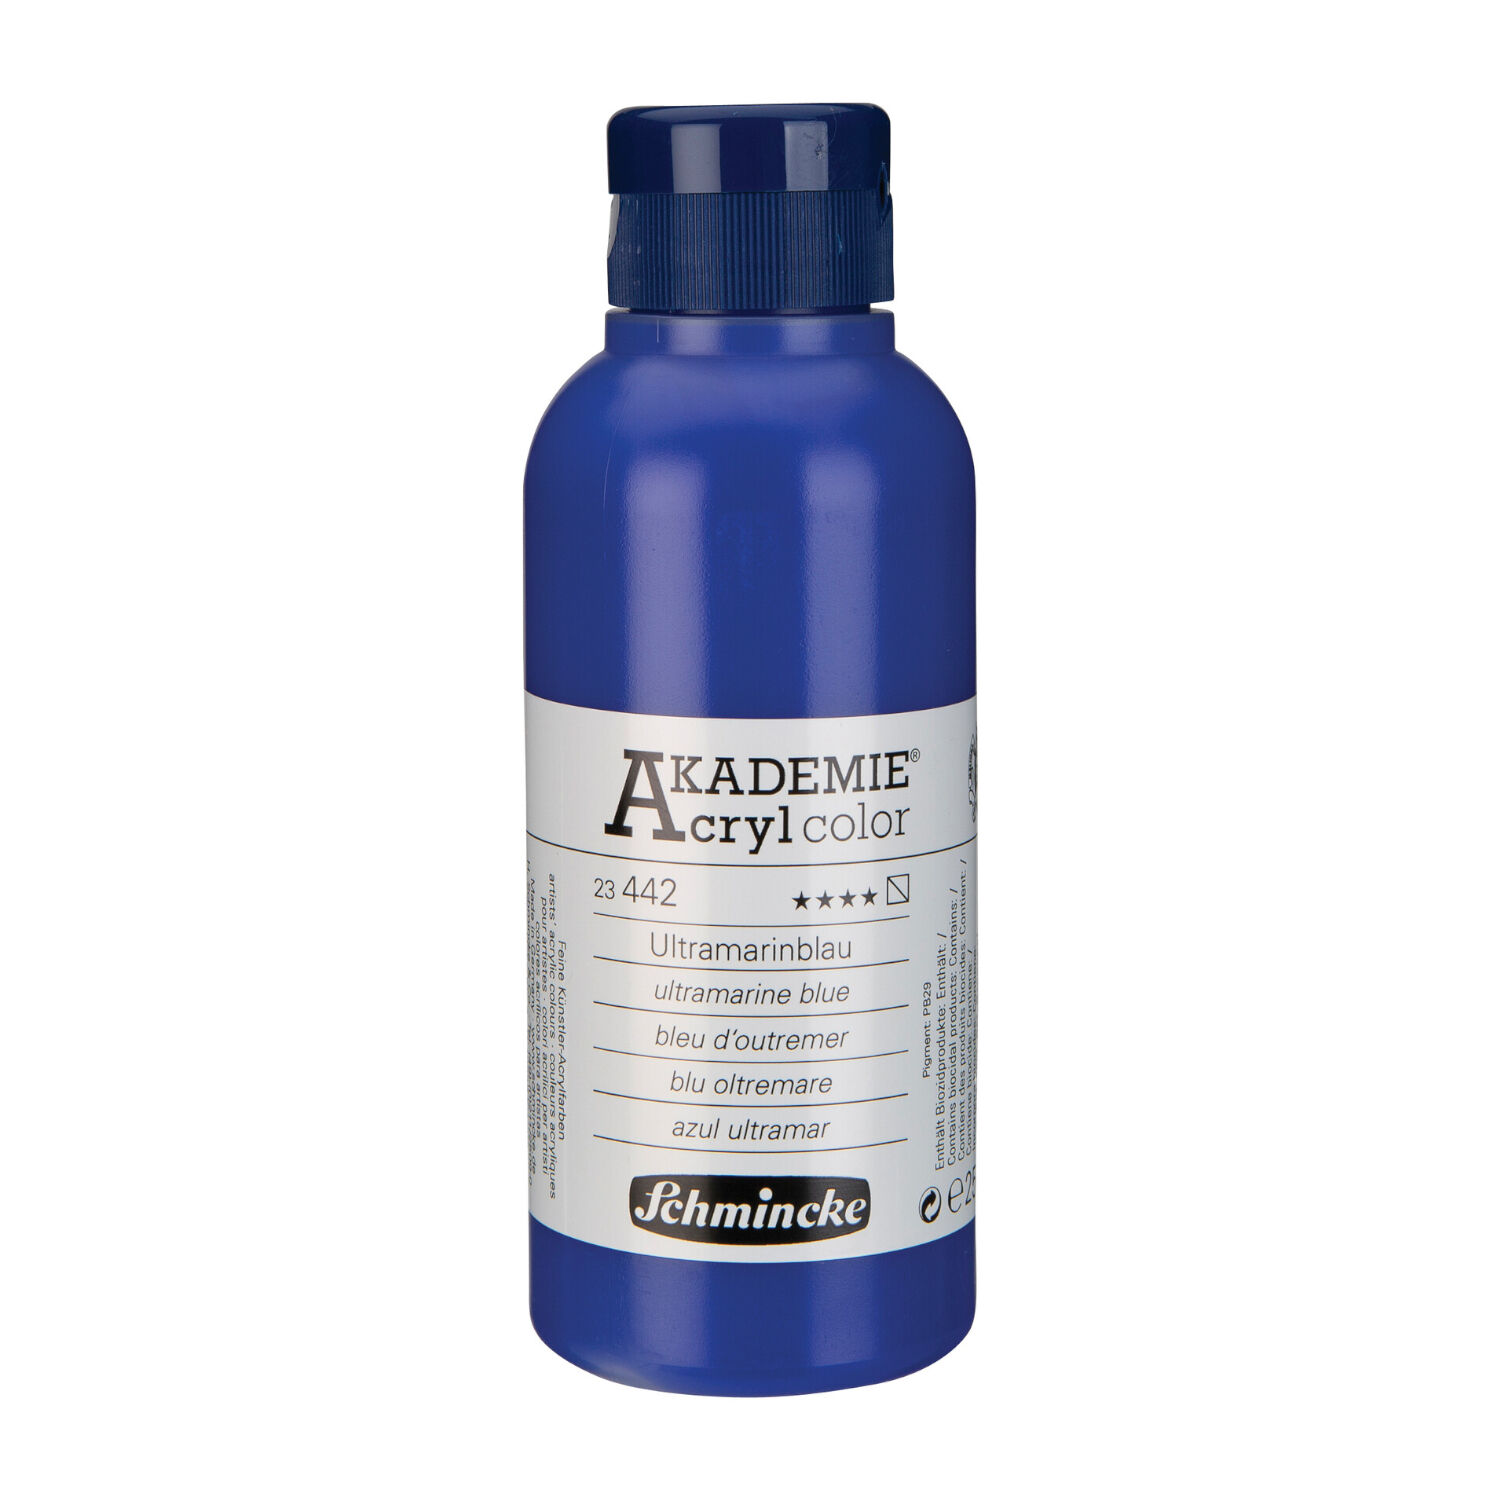 Akademie-Acryl 250ml, Ultramarinblau